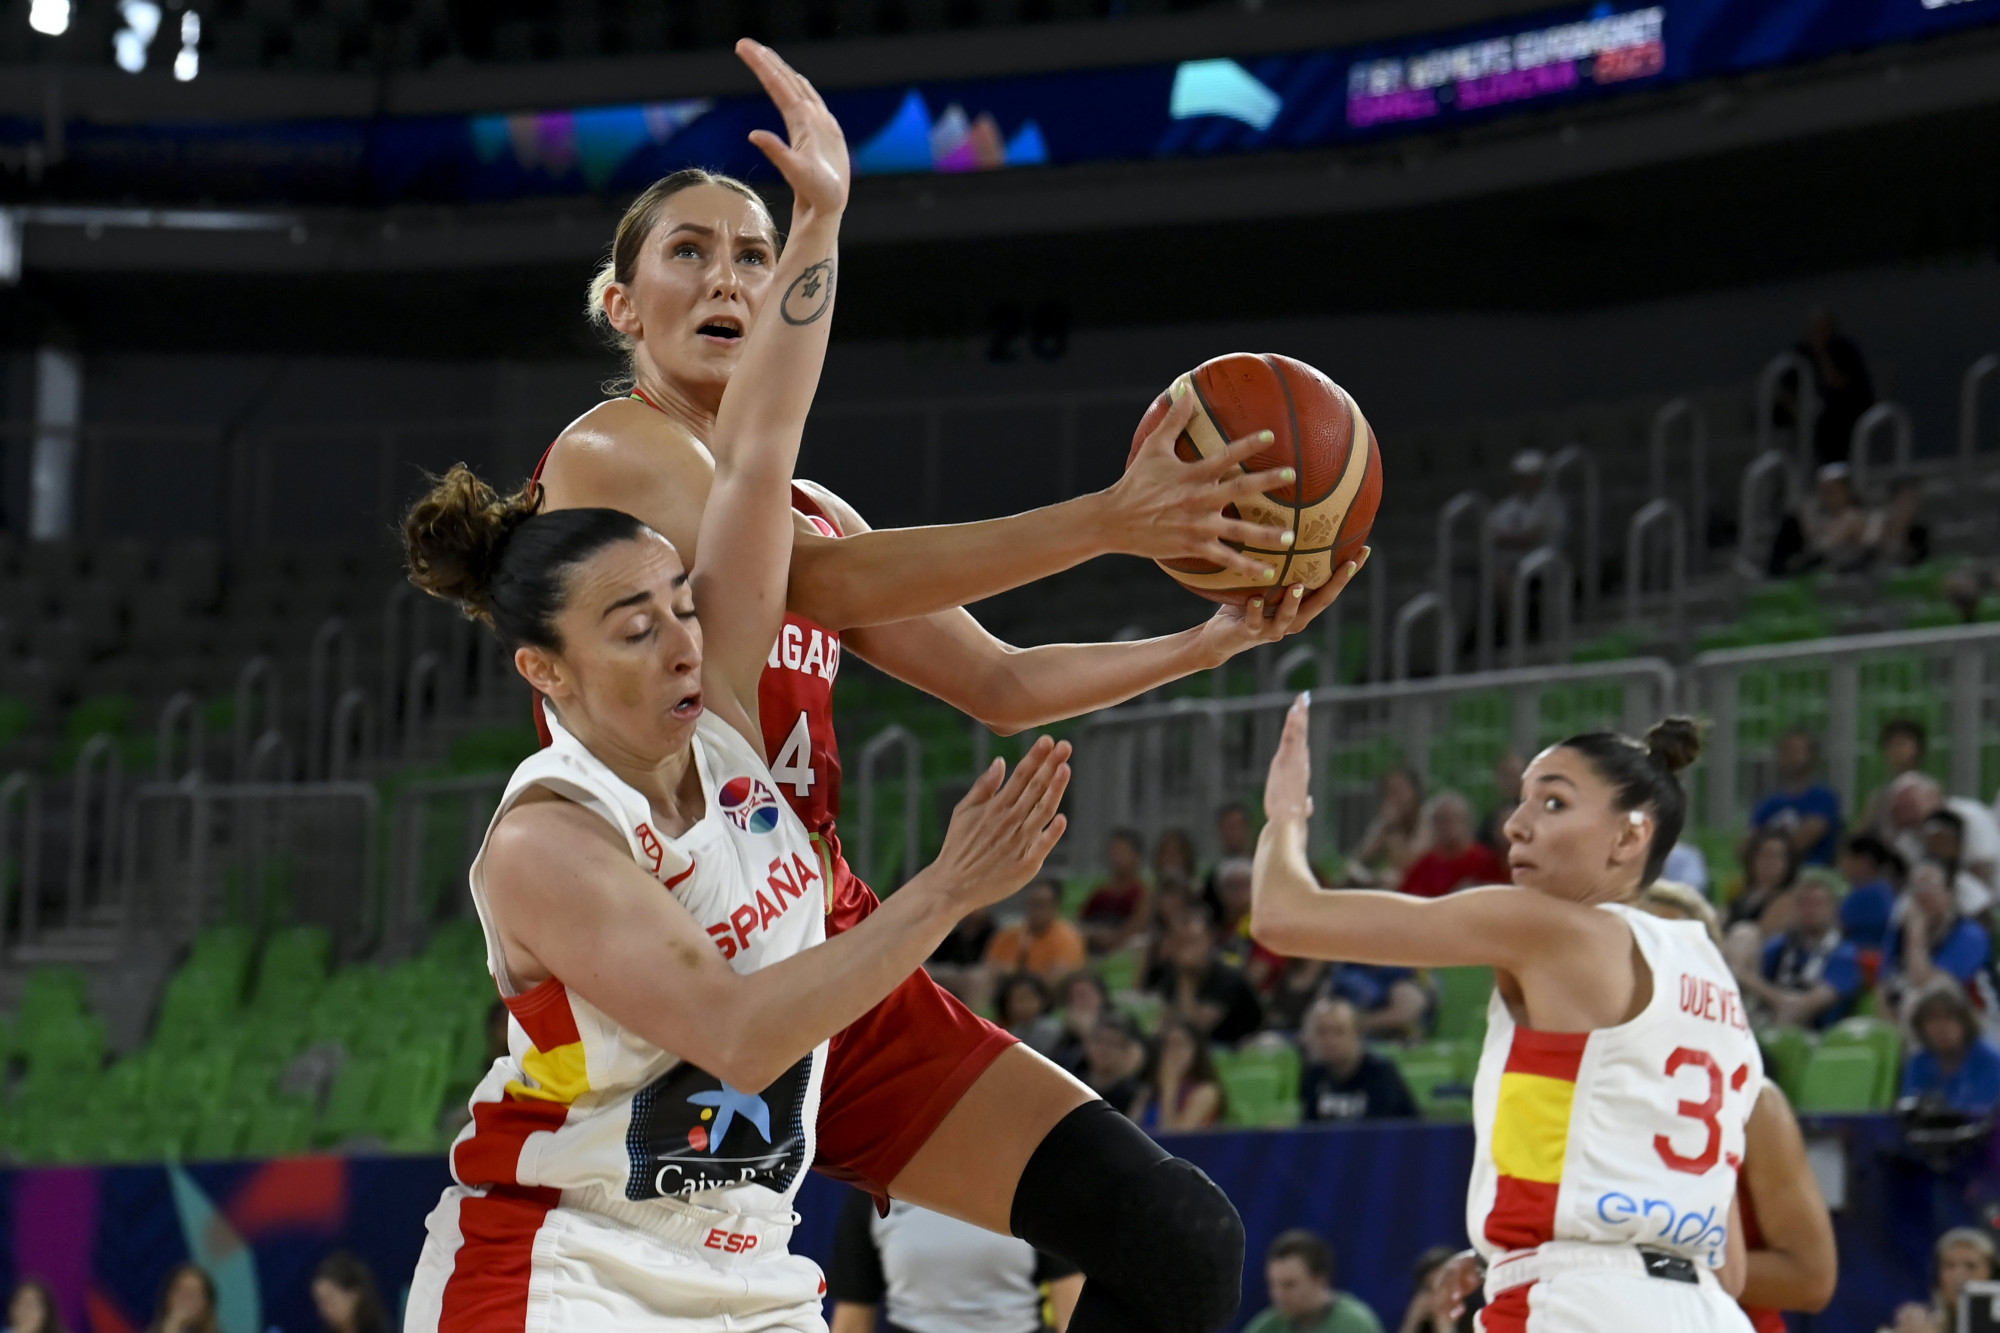 Kikapott Spanyolországtól, bronzért játszhat a női kosárlabda-válogatott az EB-n